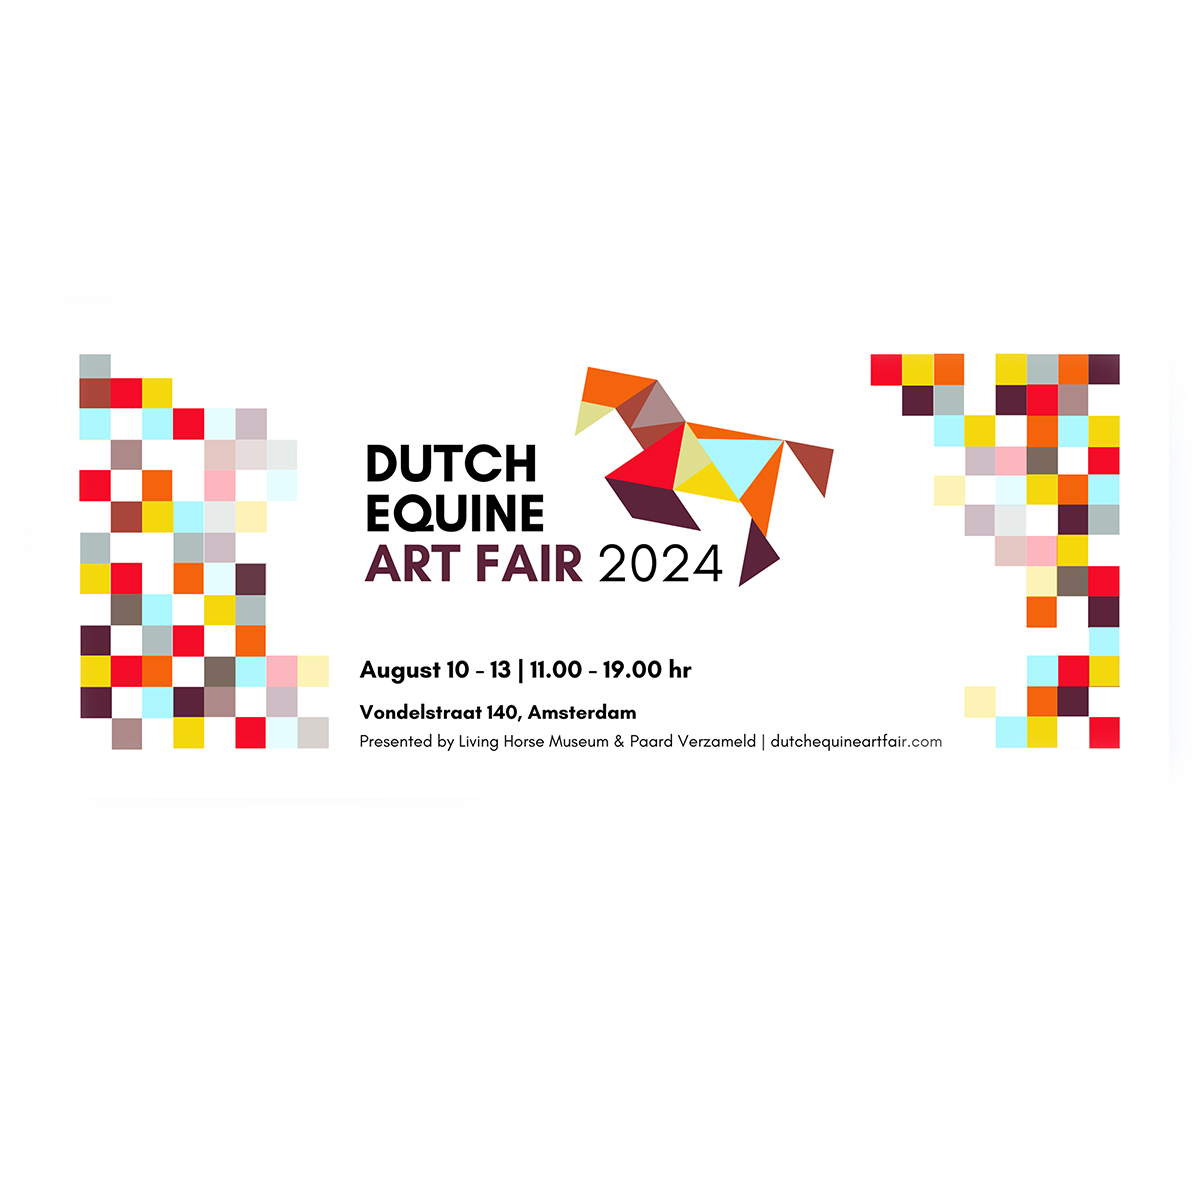 Dutch Equine Art Fair Amsterdam 2024